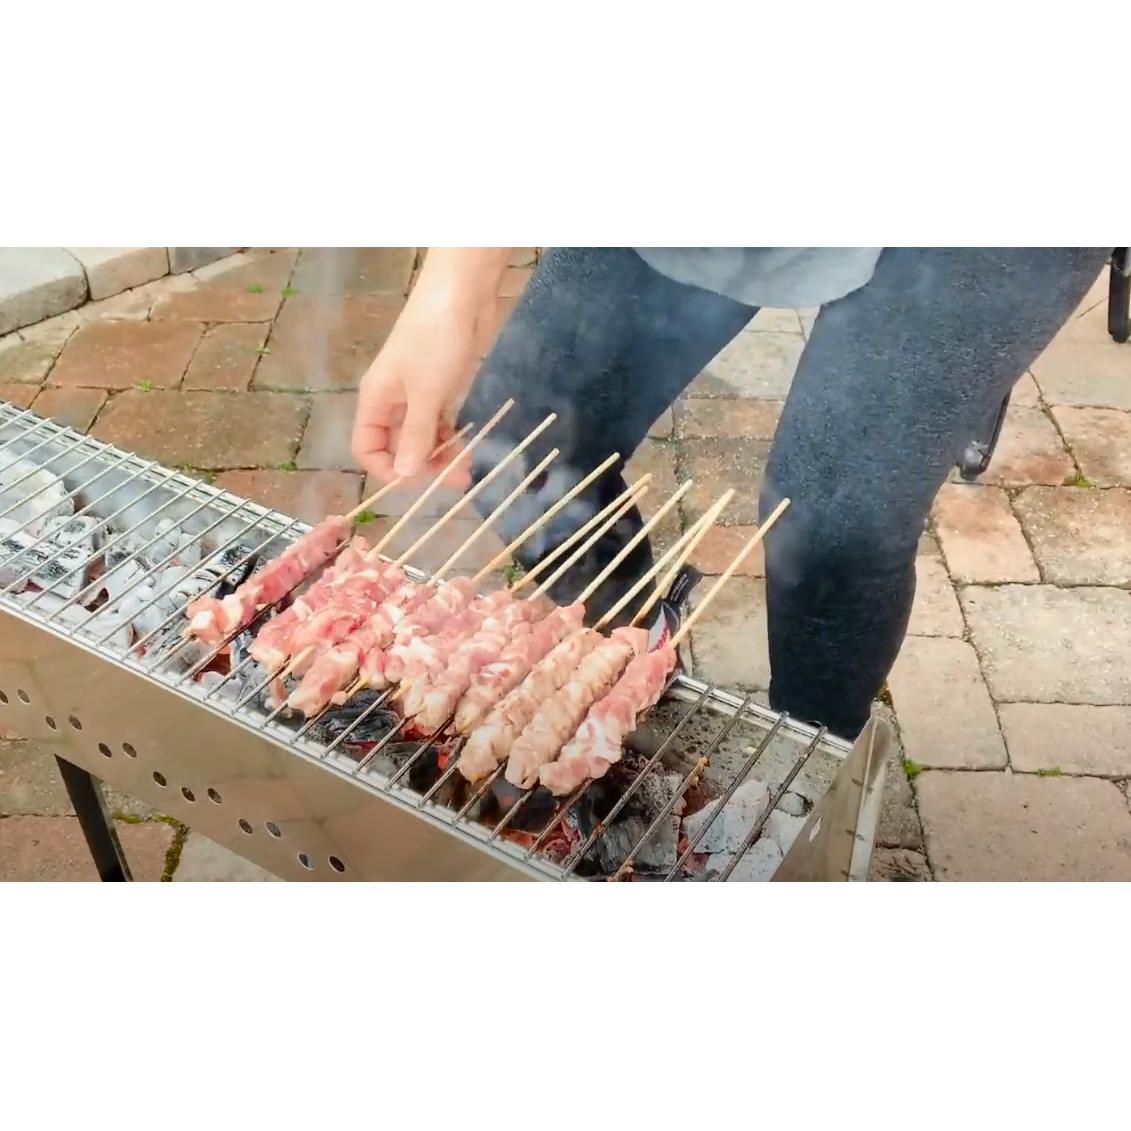 Arrosticini Spiedini BBQ USA grilling lambskewers